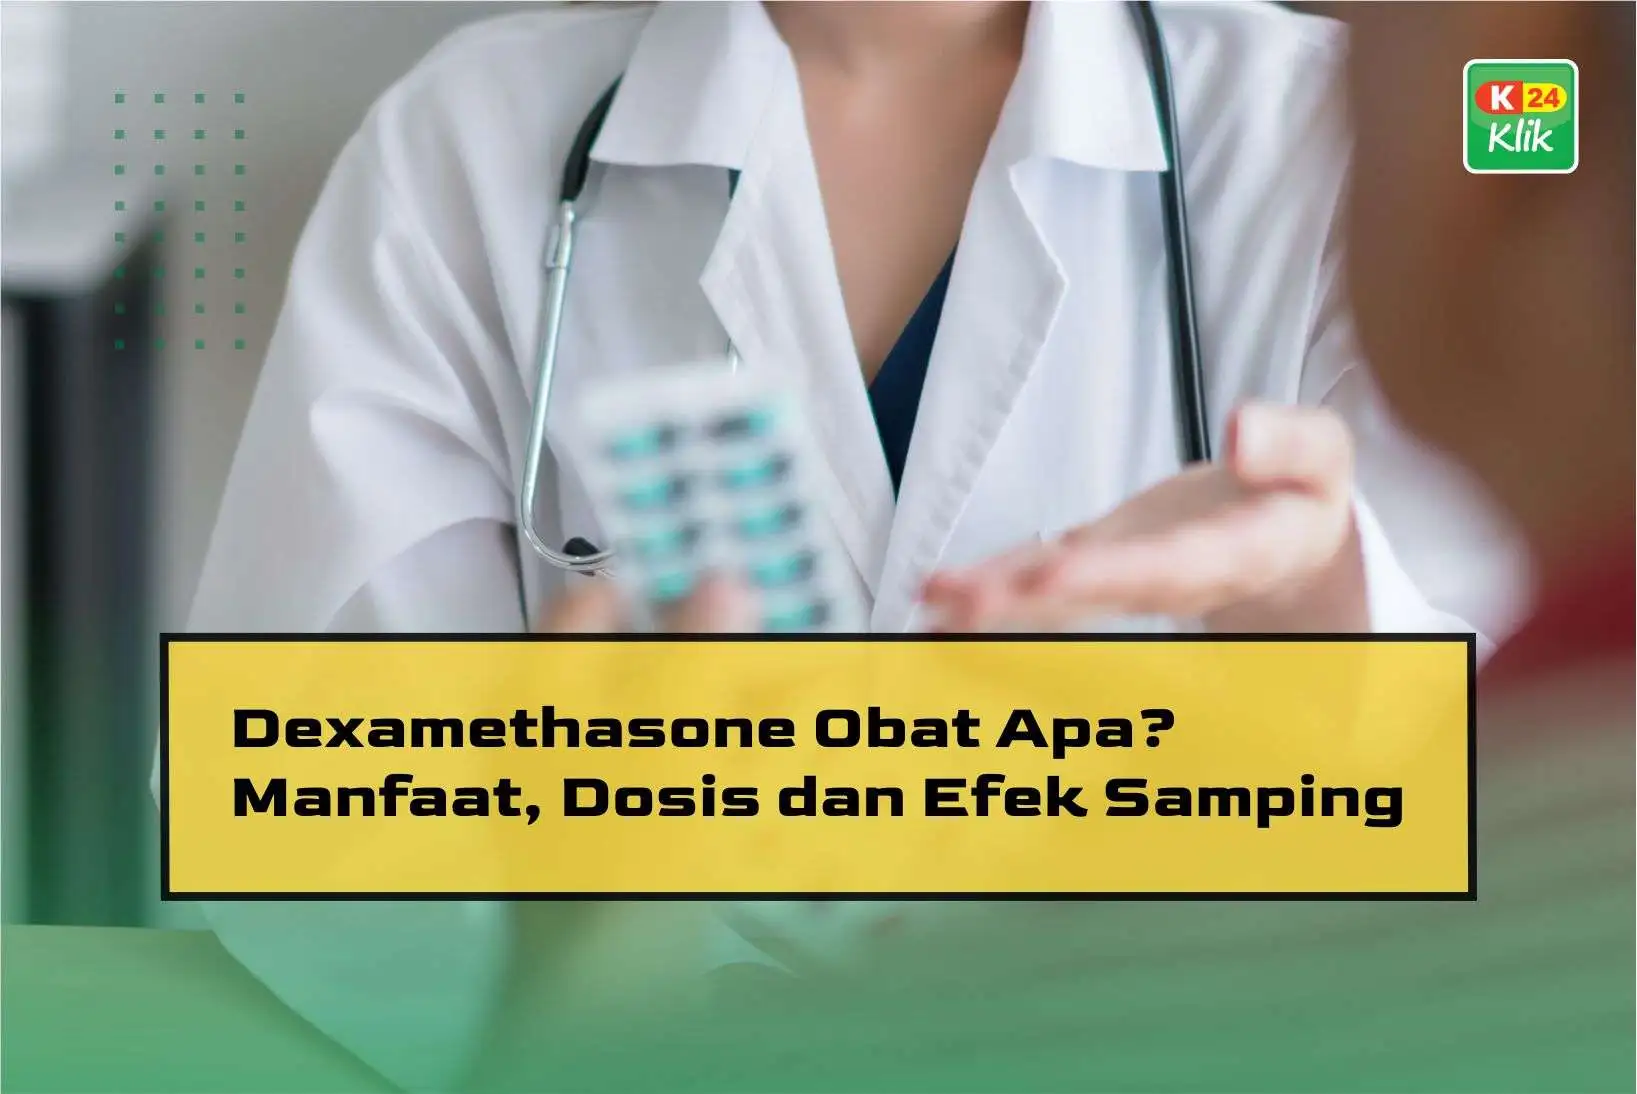 dexamethasone-obat-apa_manfaat-dosis-dan-efek-samping